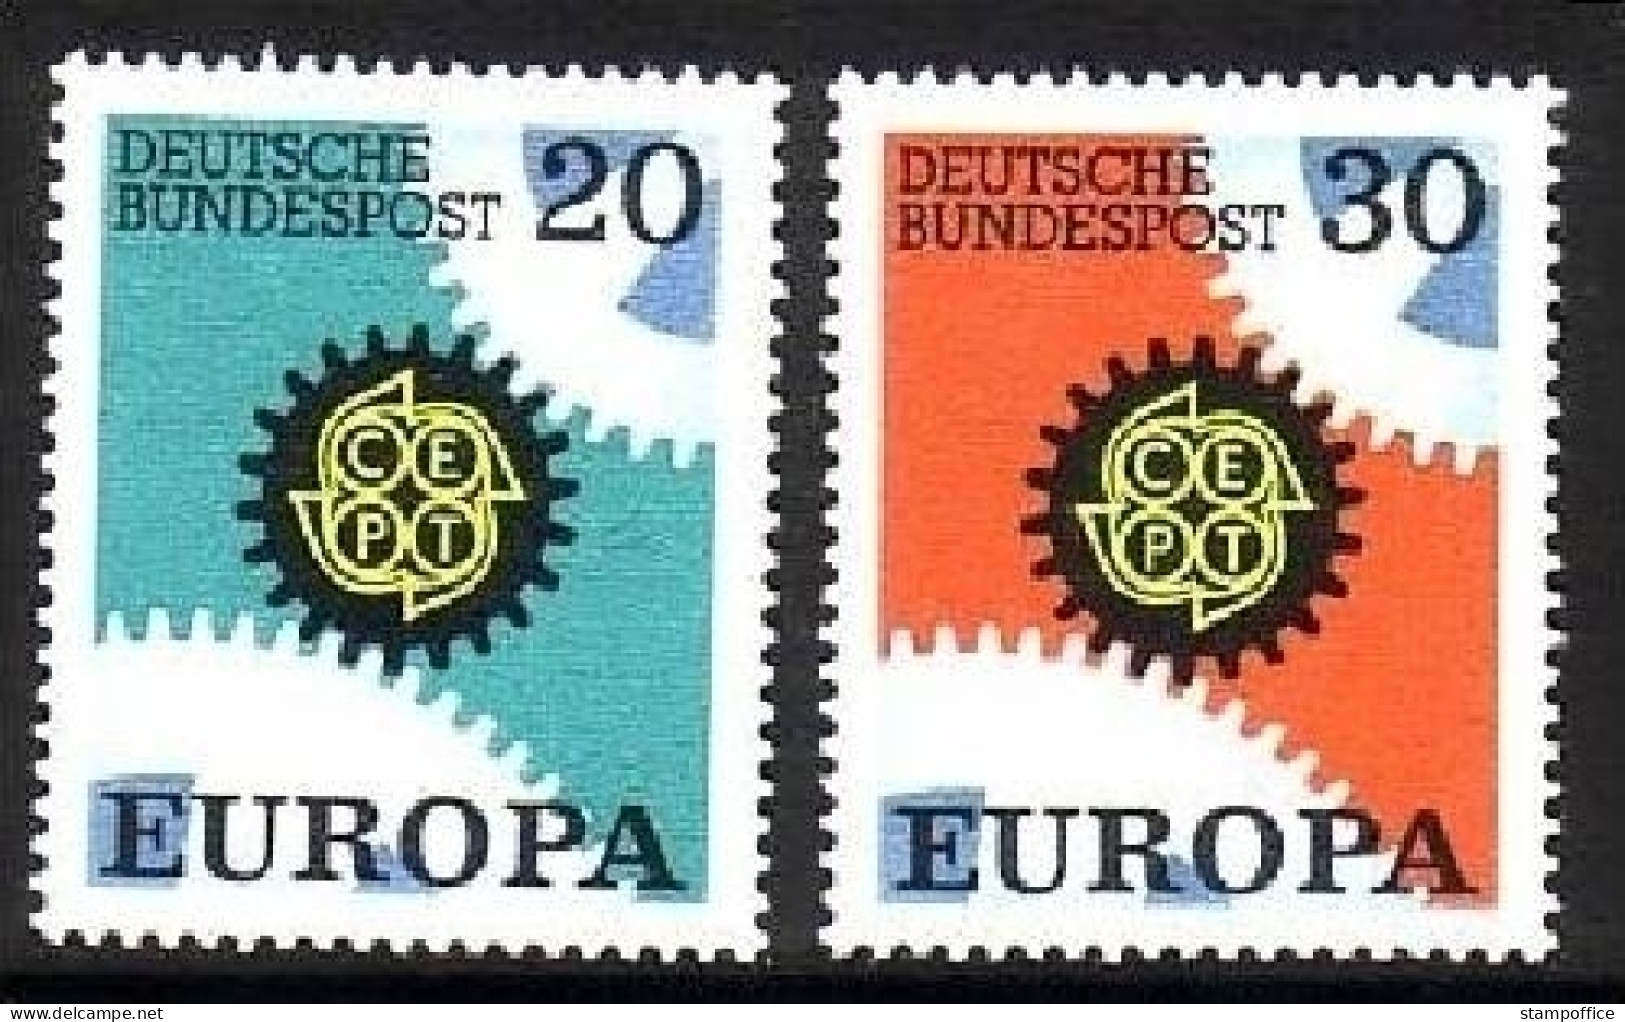 DEUTSCHLAND MI-NR. 533-534 POSTFRISCH(MINT) EUROPA 1967 - ZAHNRÄDER - 1967